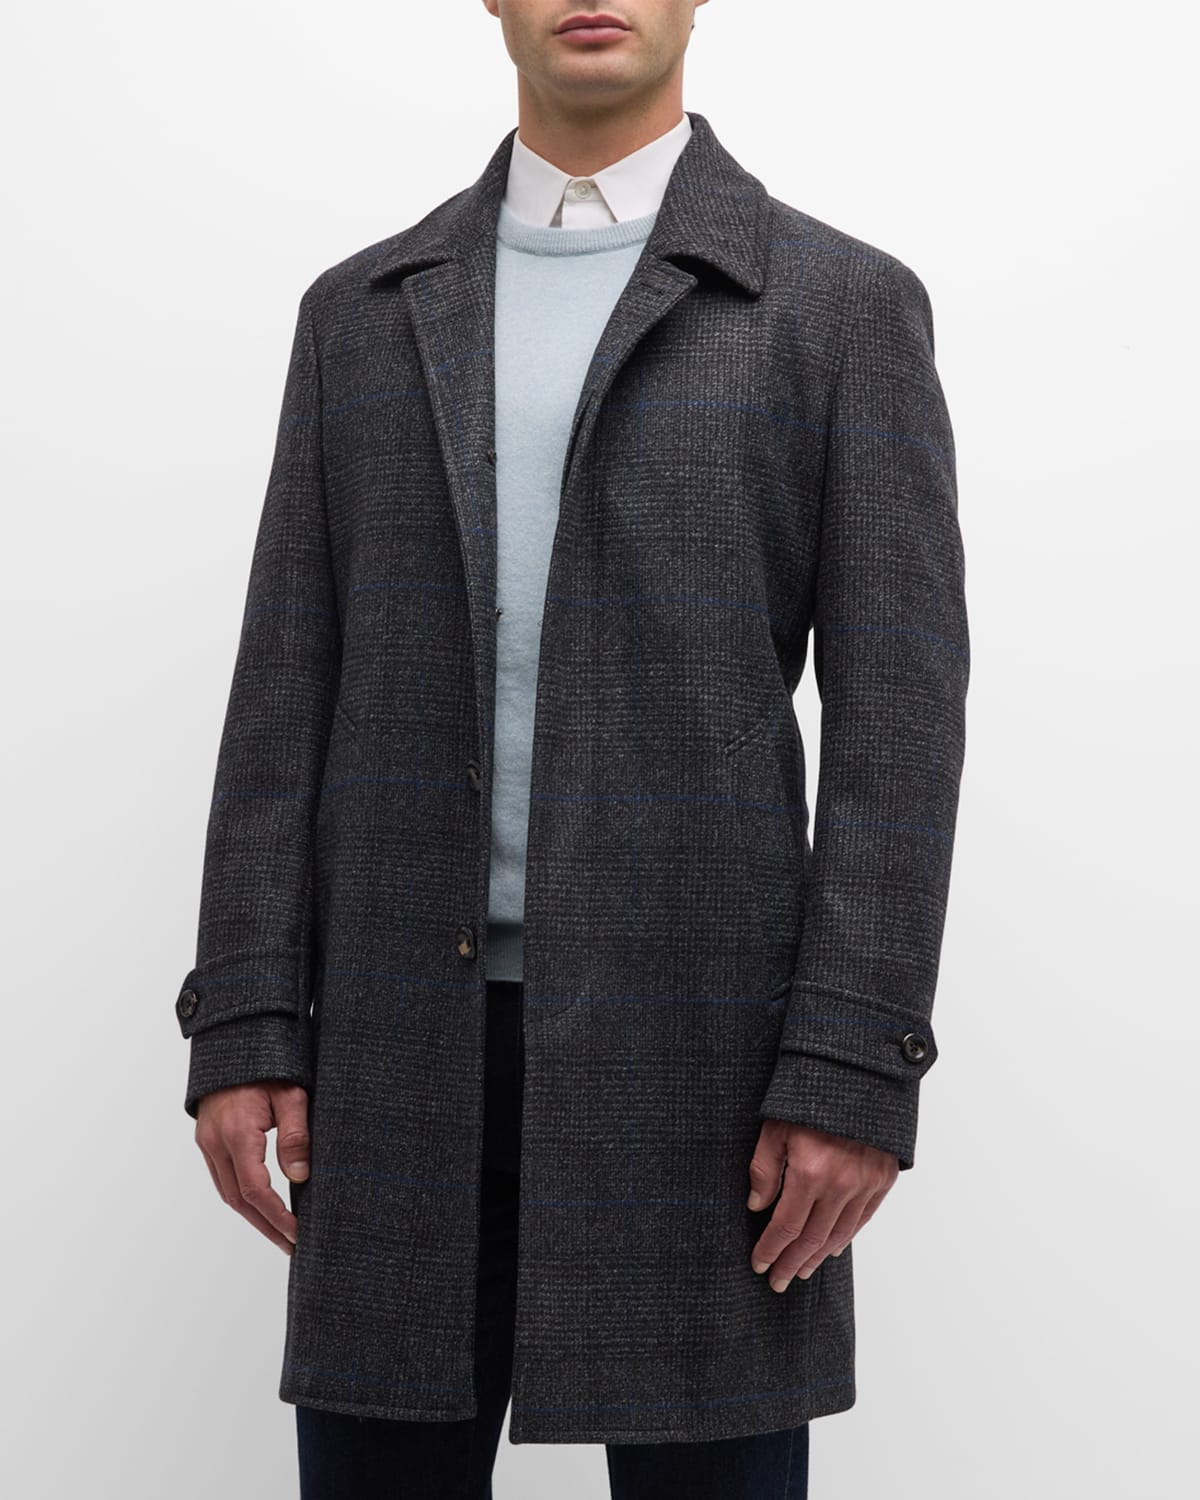 Neiman Marcus Men's Plaid Double-face Balmacaan In Dark Grey